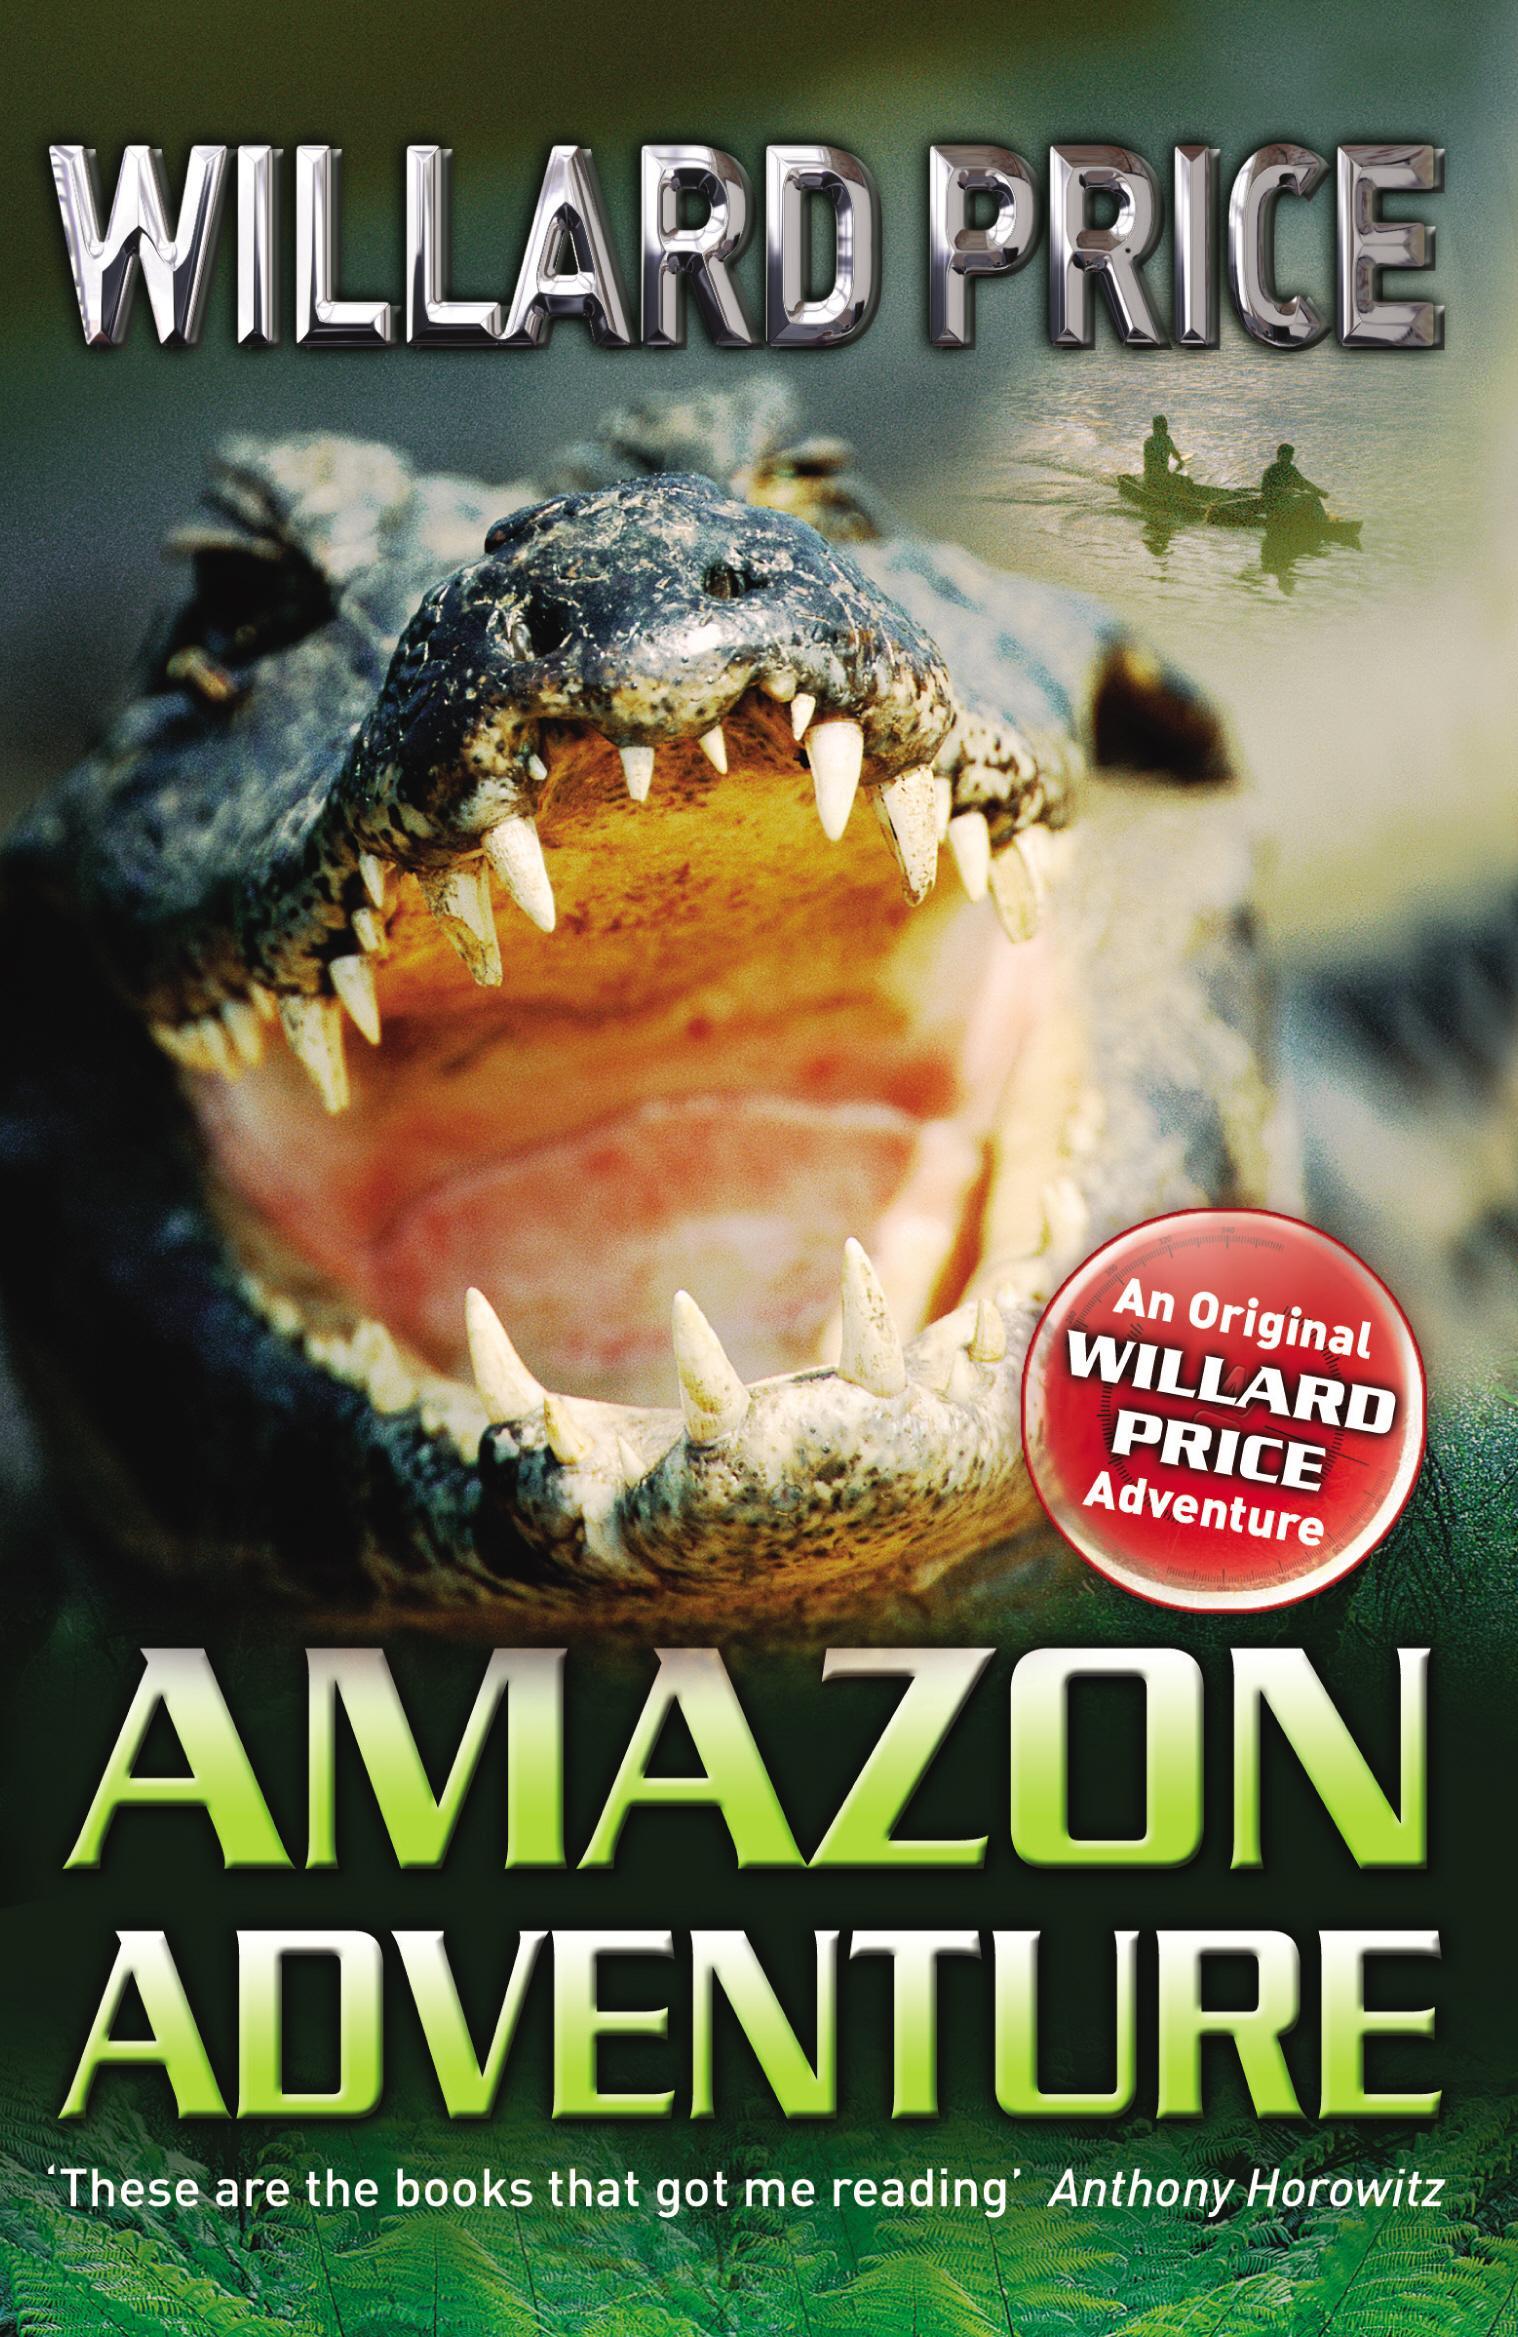 Amazon Adventure - Willard Price